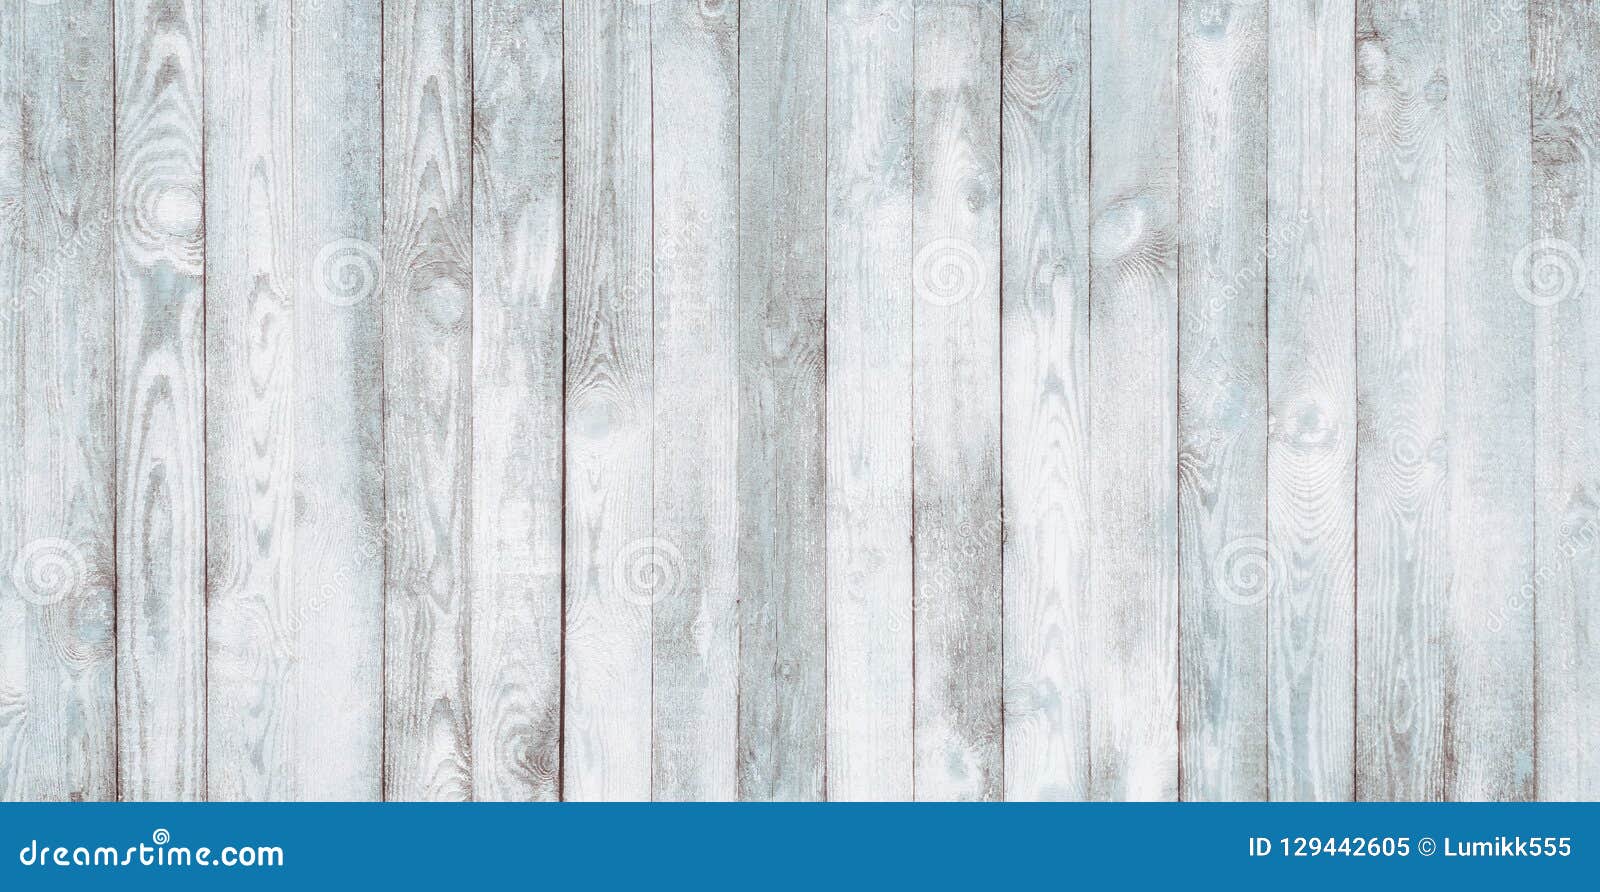 vintage blue wood background